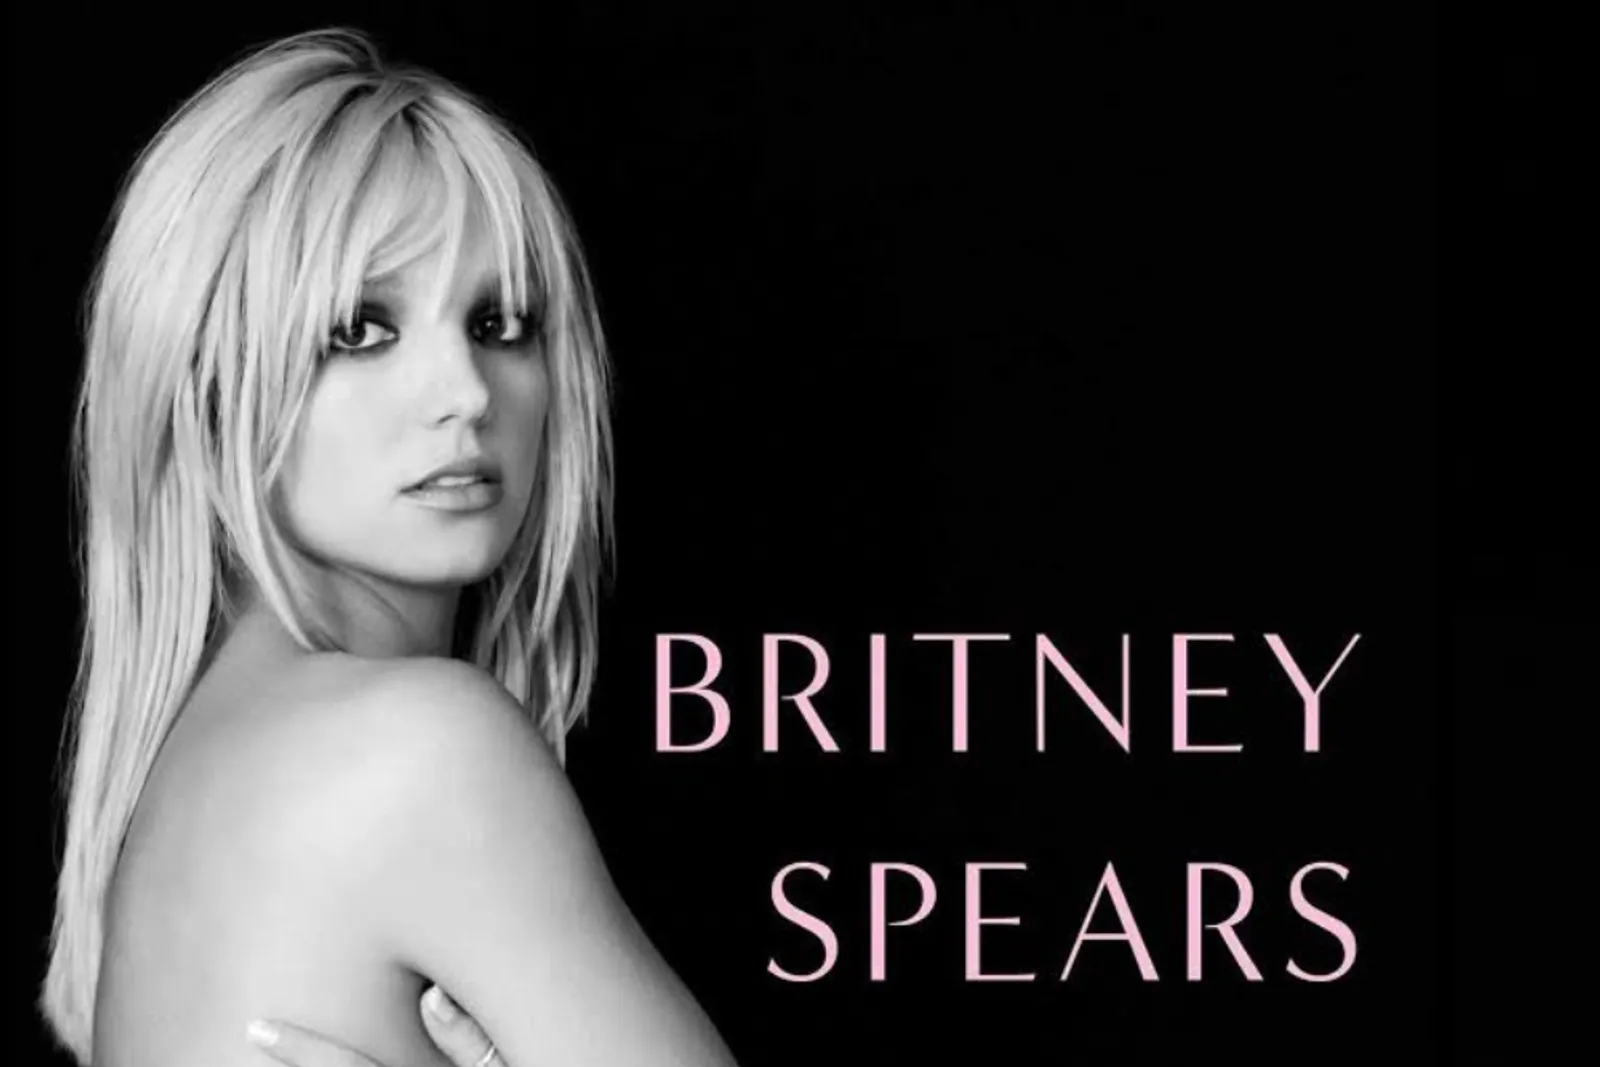 5 Fakta Buku “The Woman In Me”, Benarkah Britney Spears Pernah Aborsi?